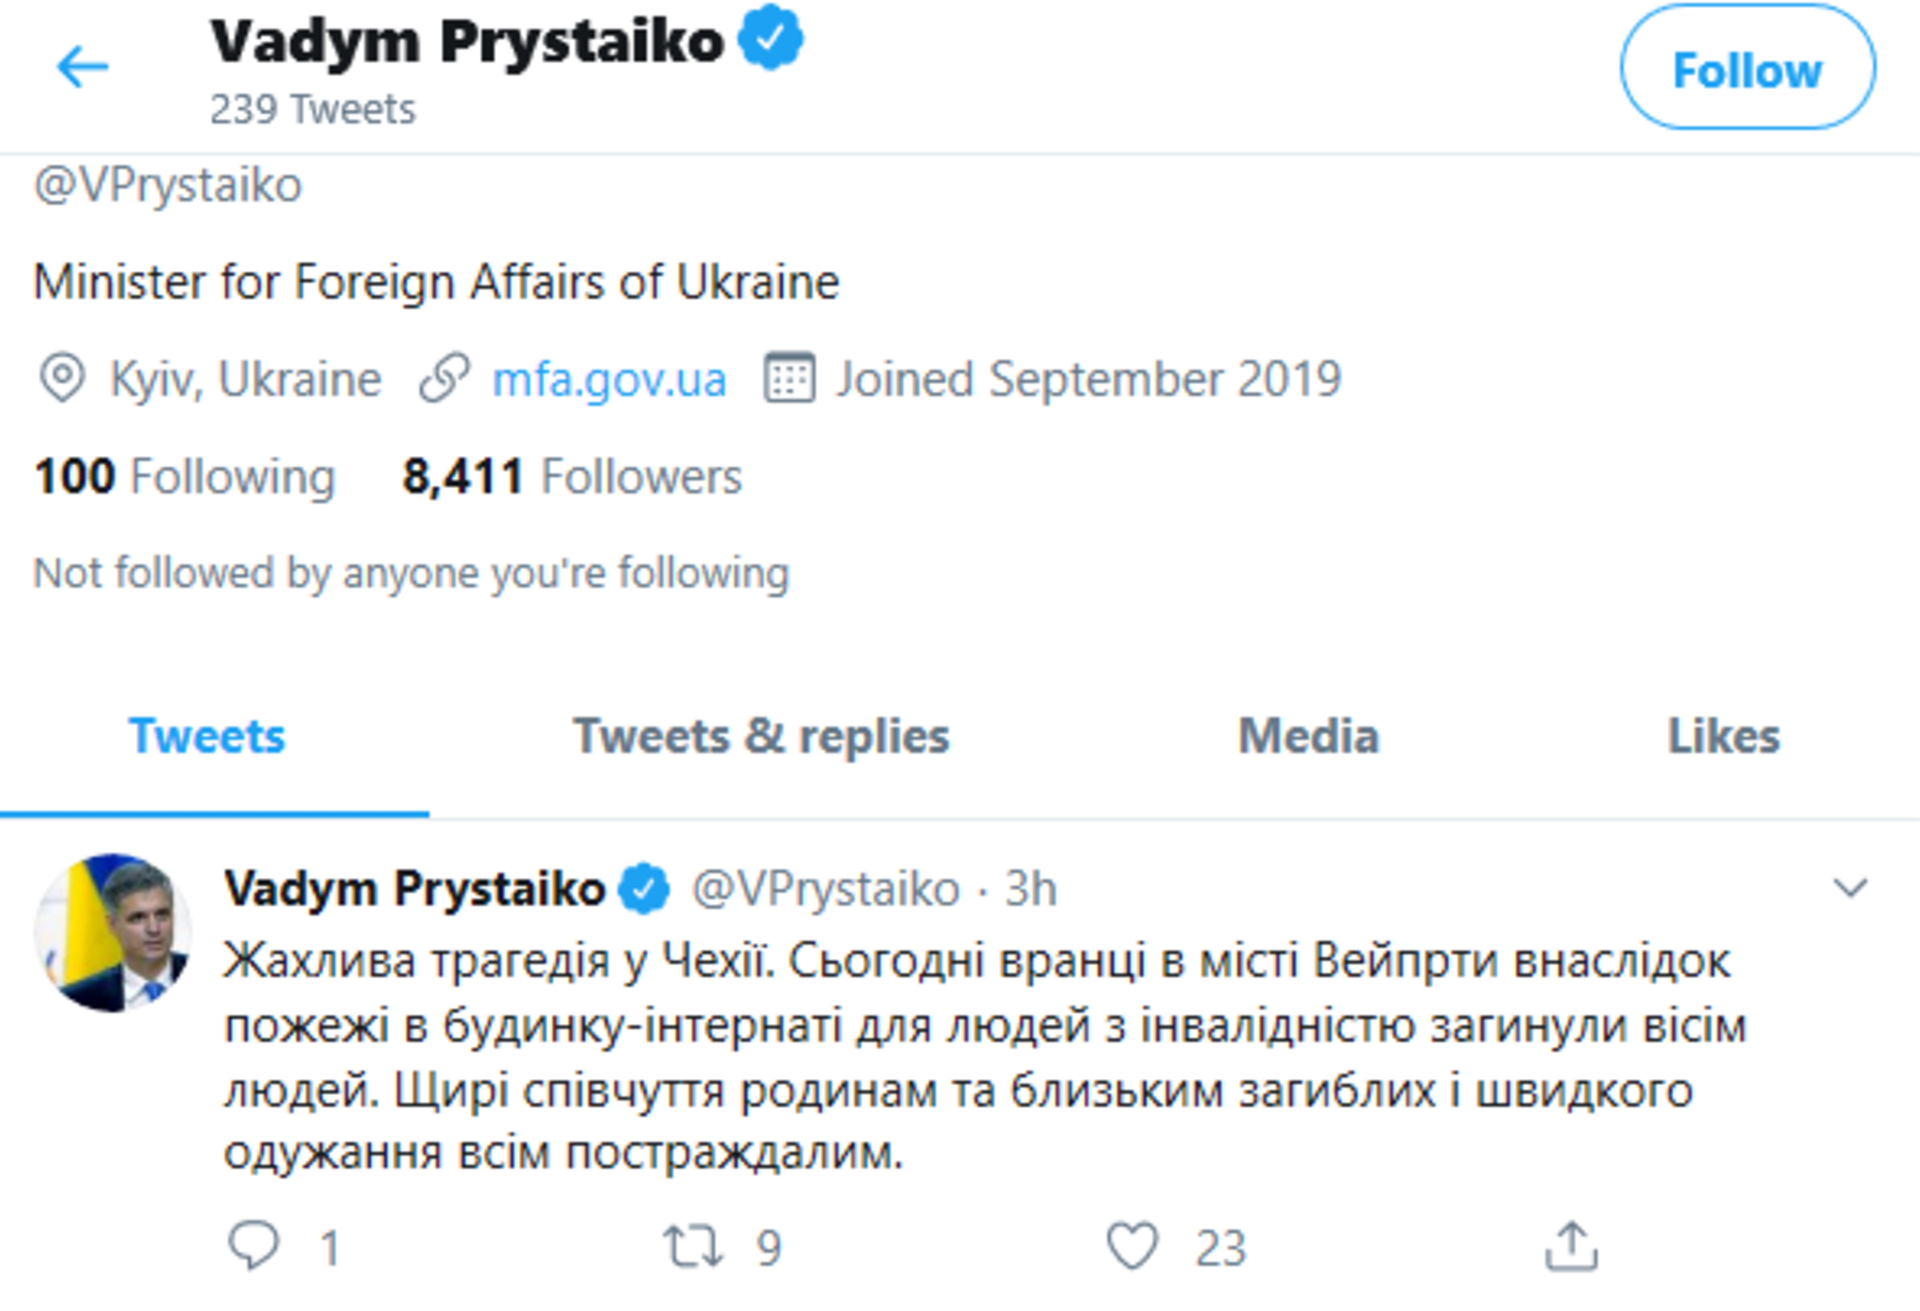 Vyjádření soustrasti Vadyma Prystajkova